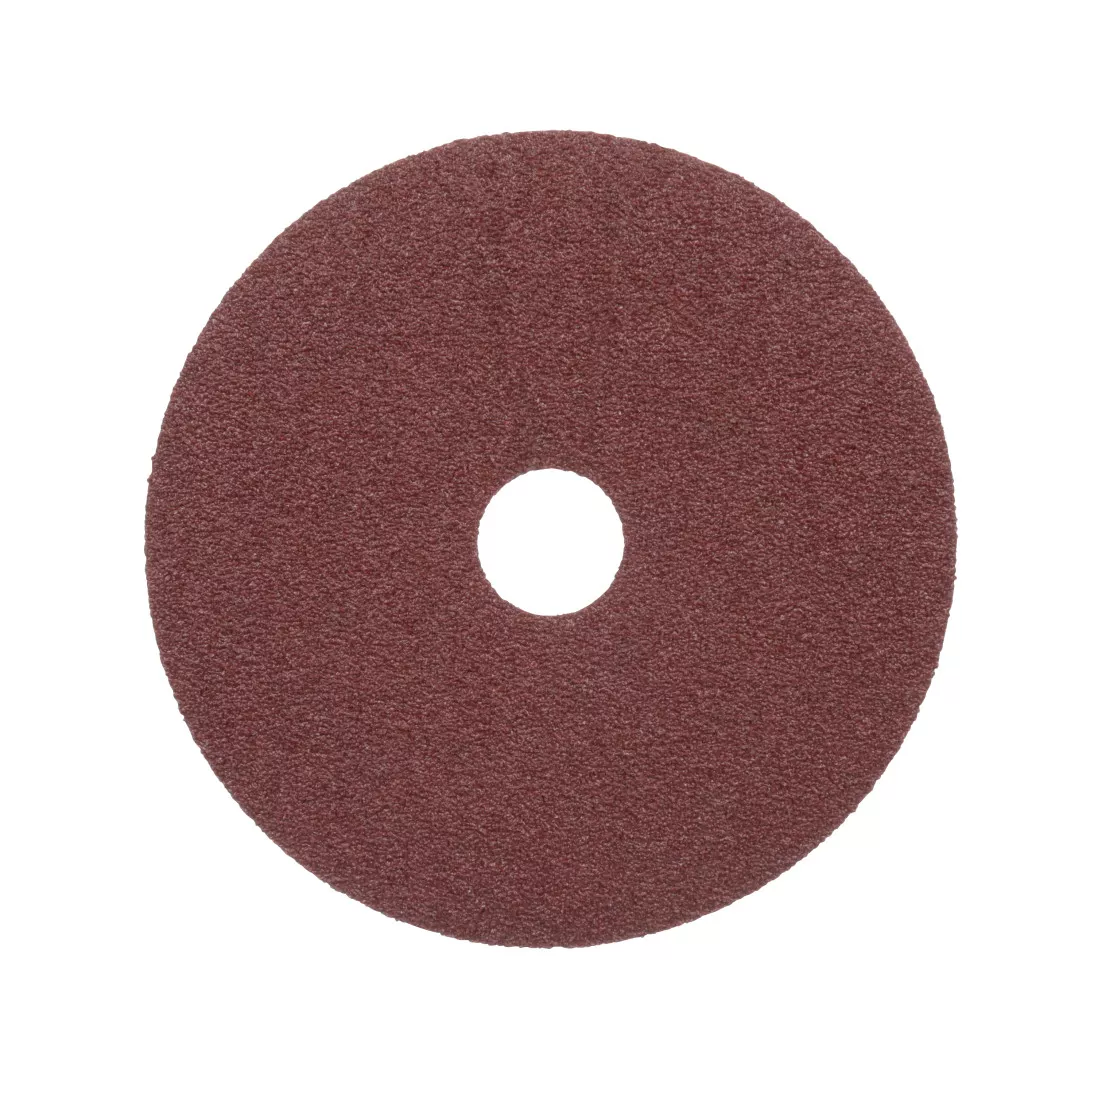 Standard Abrasives™ A/O Resin Fiber Disc, 530103, 5 in x 7/8 in 36, 25
per inner 100 per case